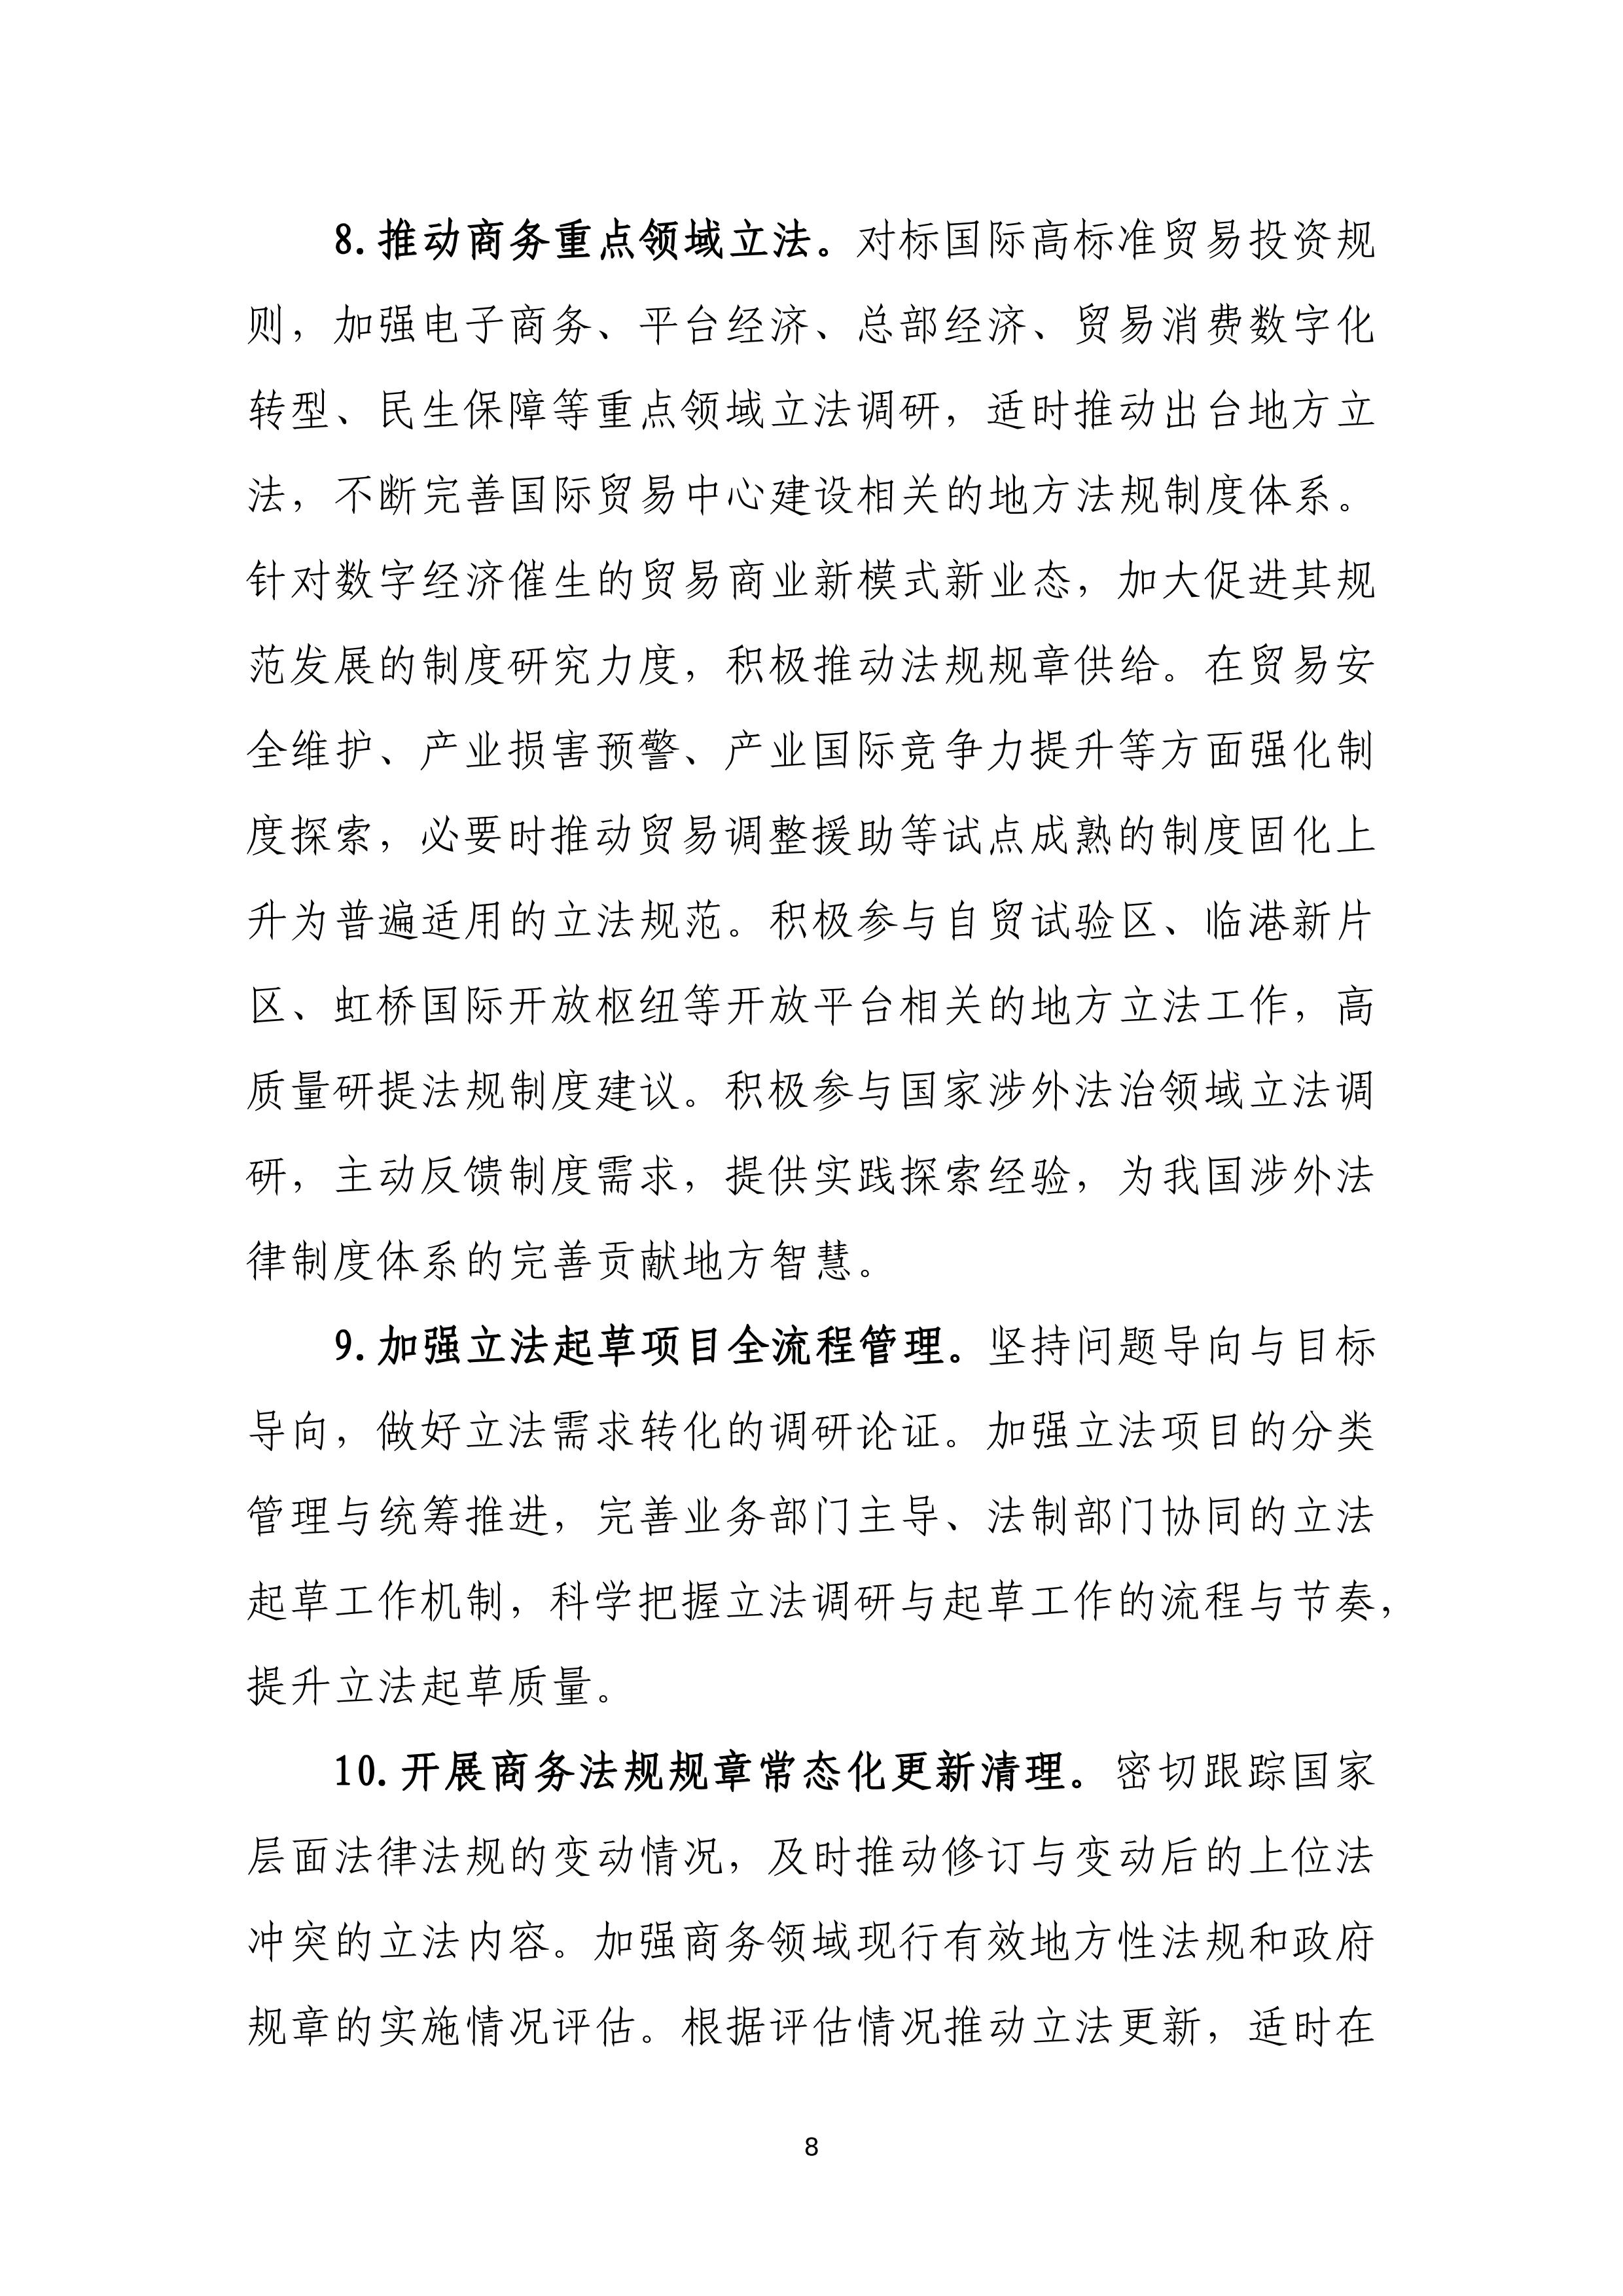 “十四五”时期上海商务法治建设规划_08.jpg